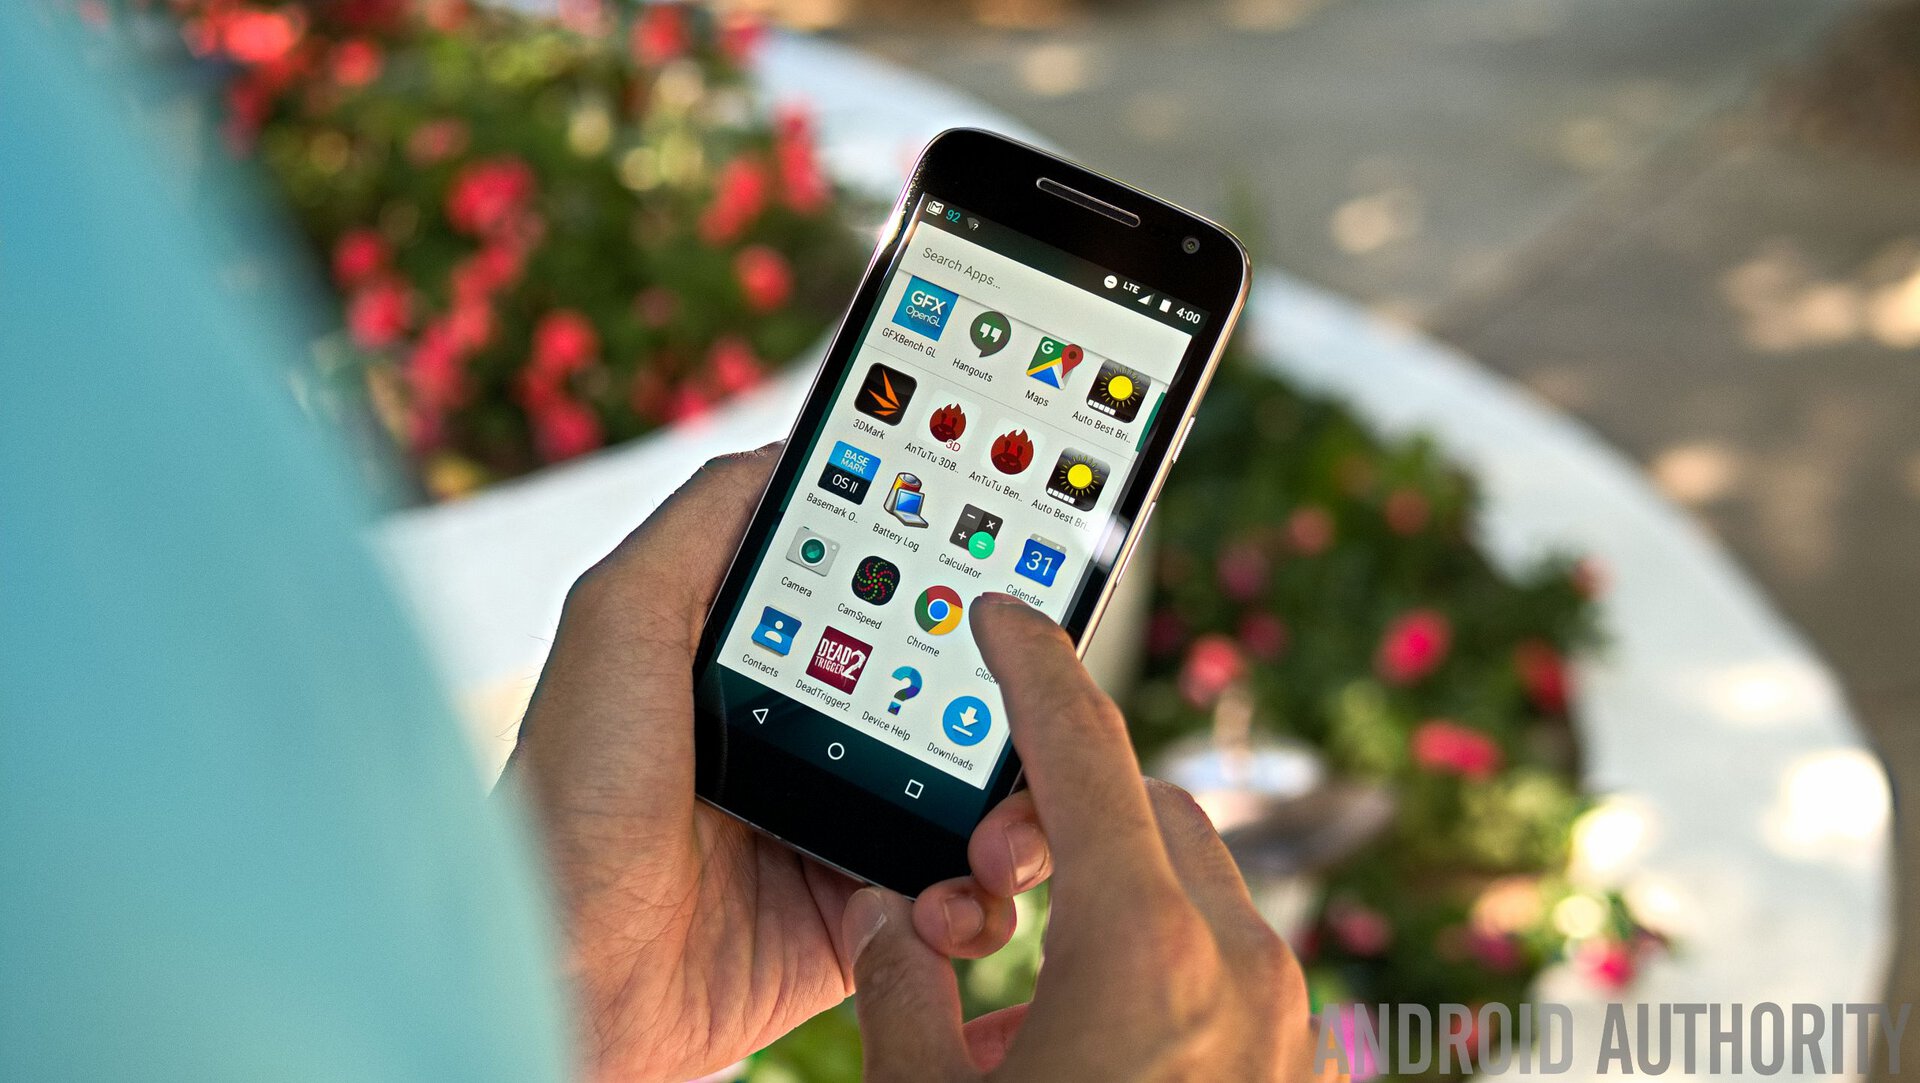 Moto G4 review: Lenovated: Camera